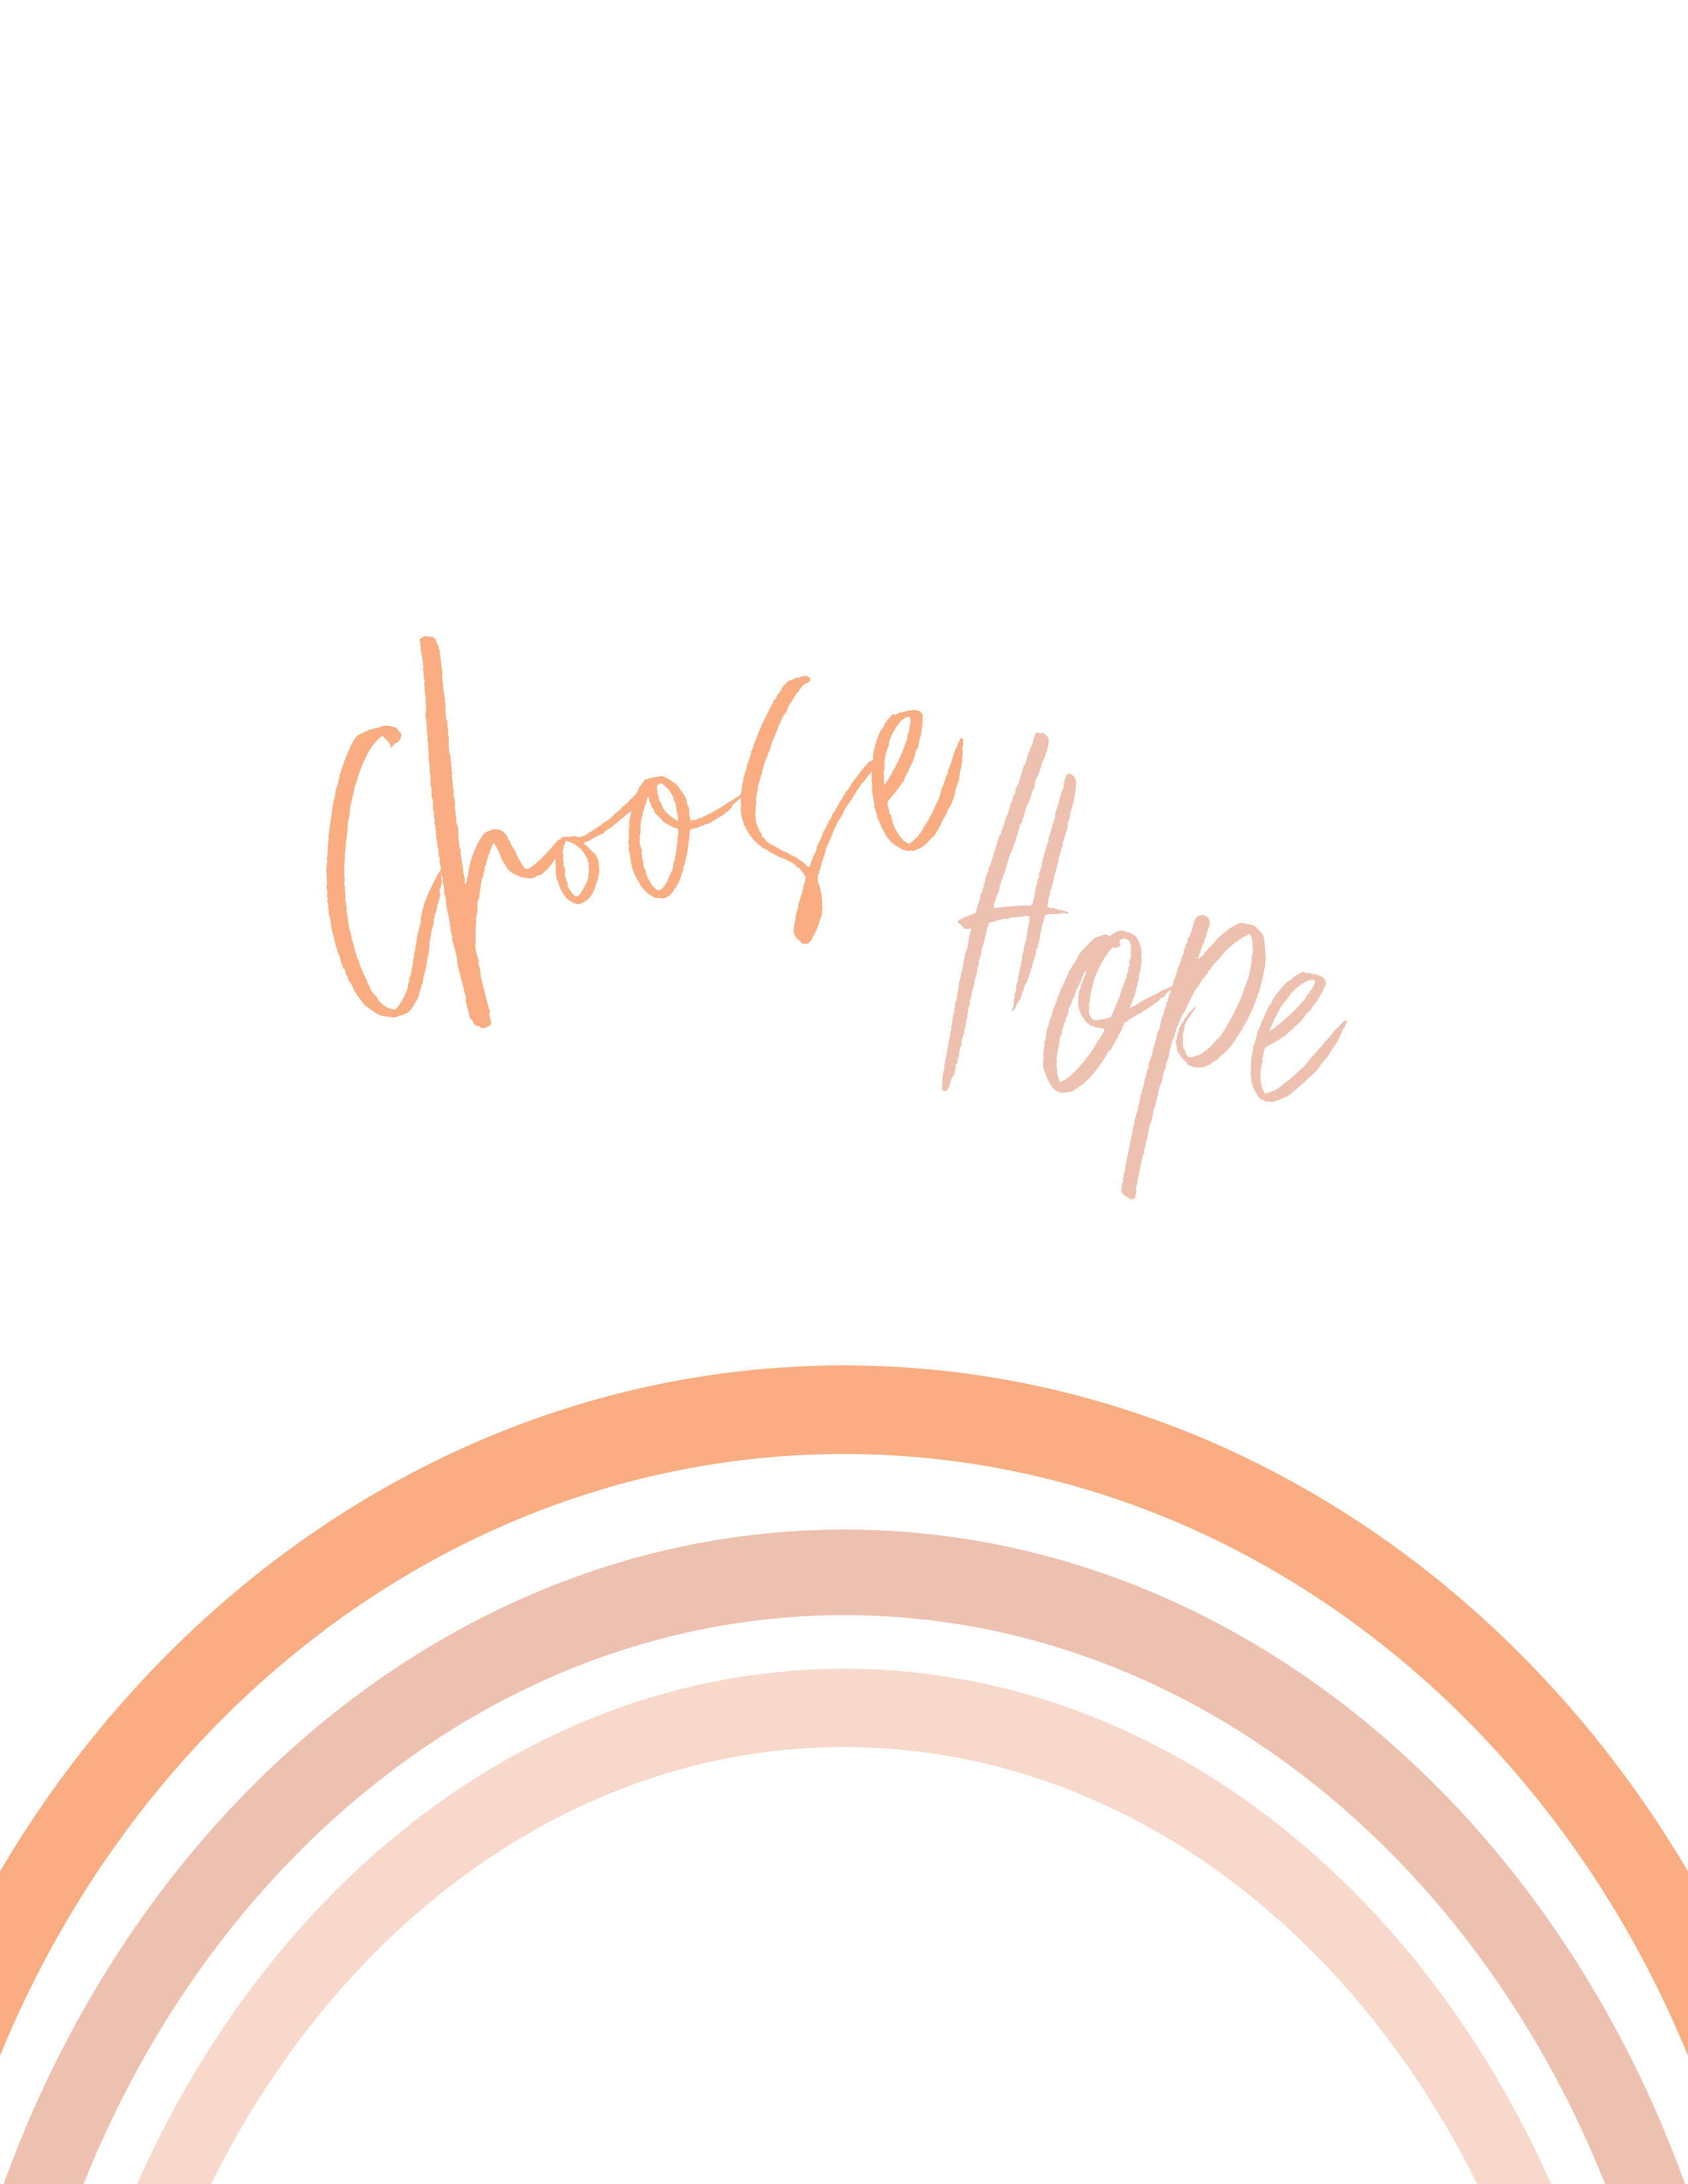 choose hope rainbow printable